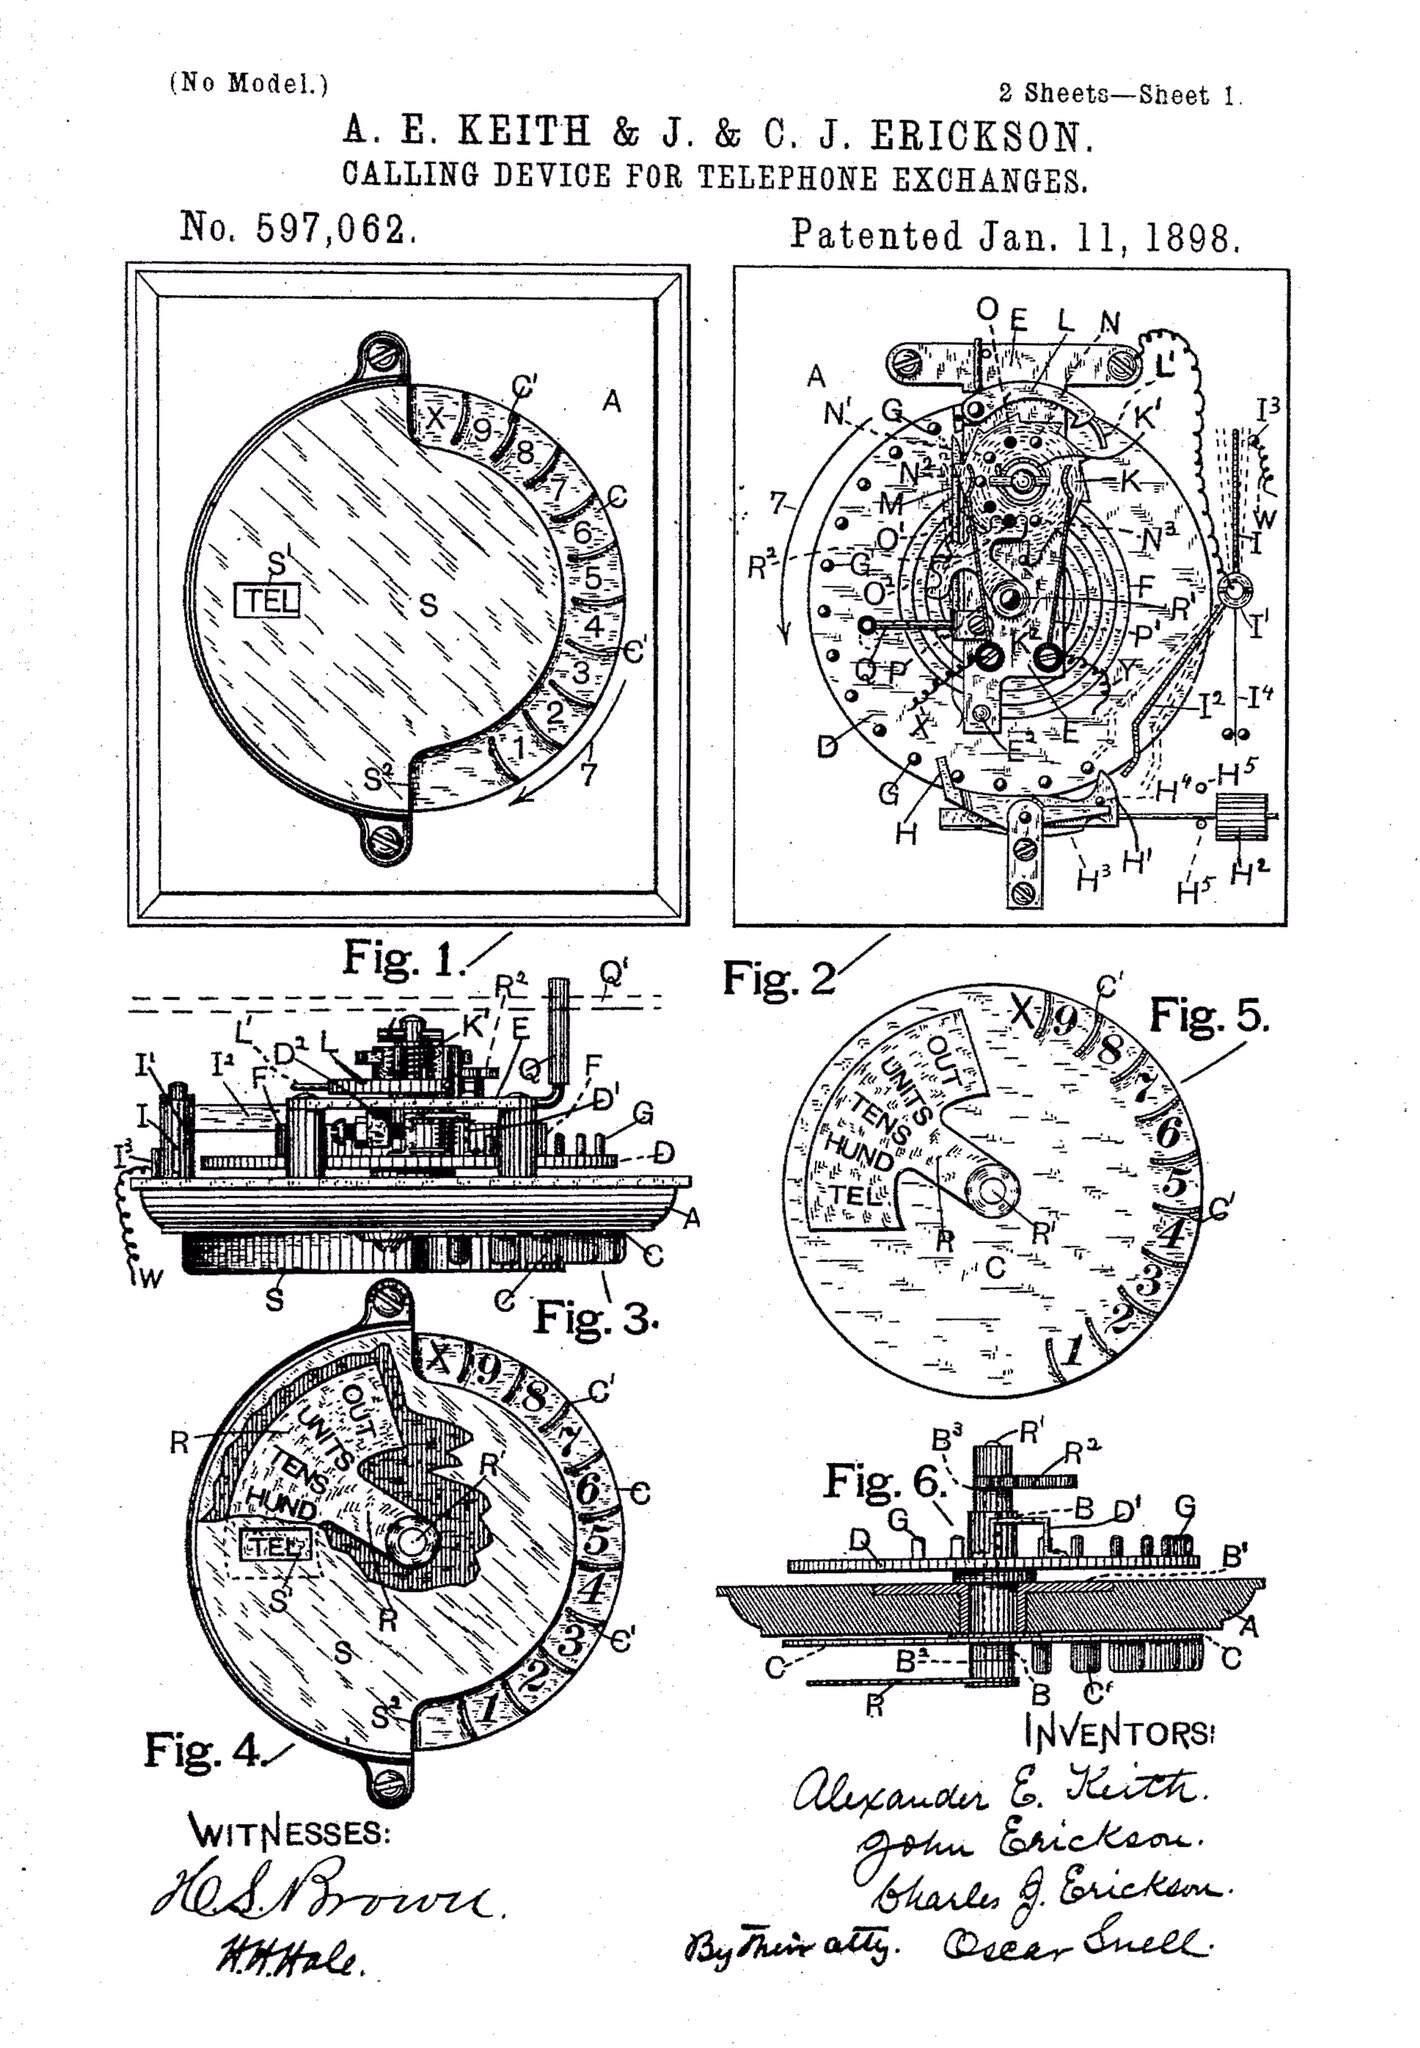 当电话刚发明的时候，需要联系接线员才能打电话。#1896年8月20日，John和Charles J. Erickson兄弟和Alexander E. Keith申请了旋转拨号电话的专利。1898年1月11日颁发专利。.jpg